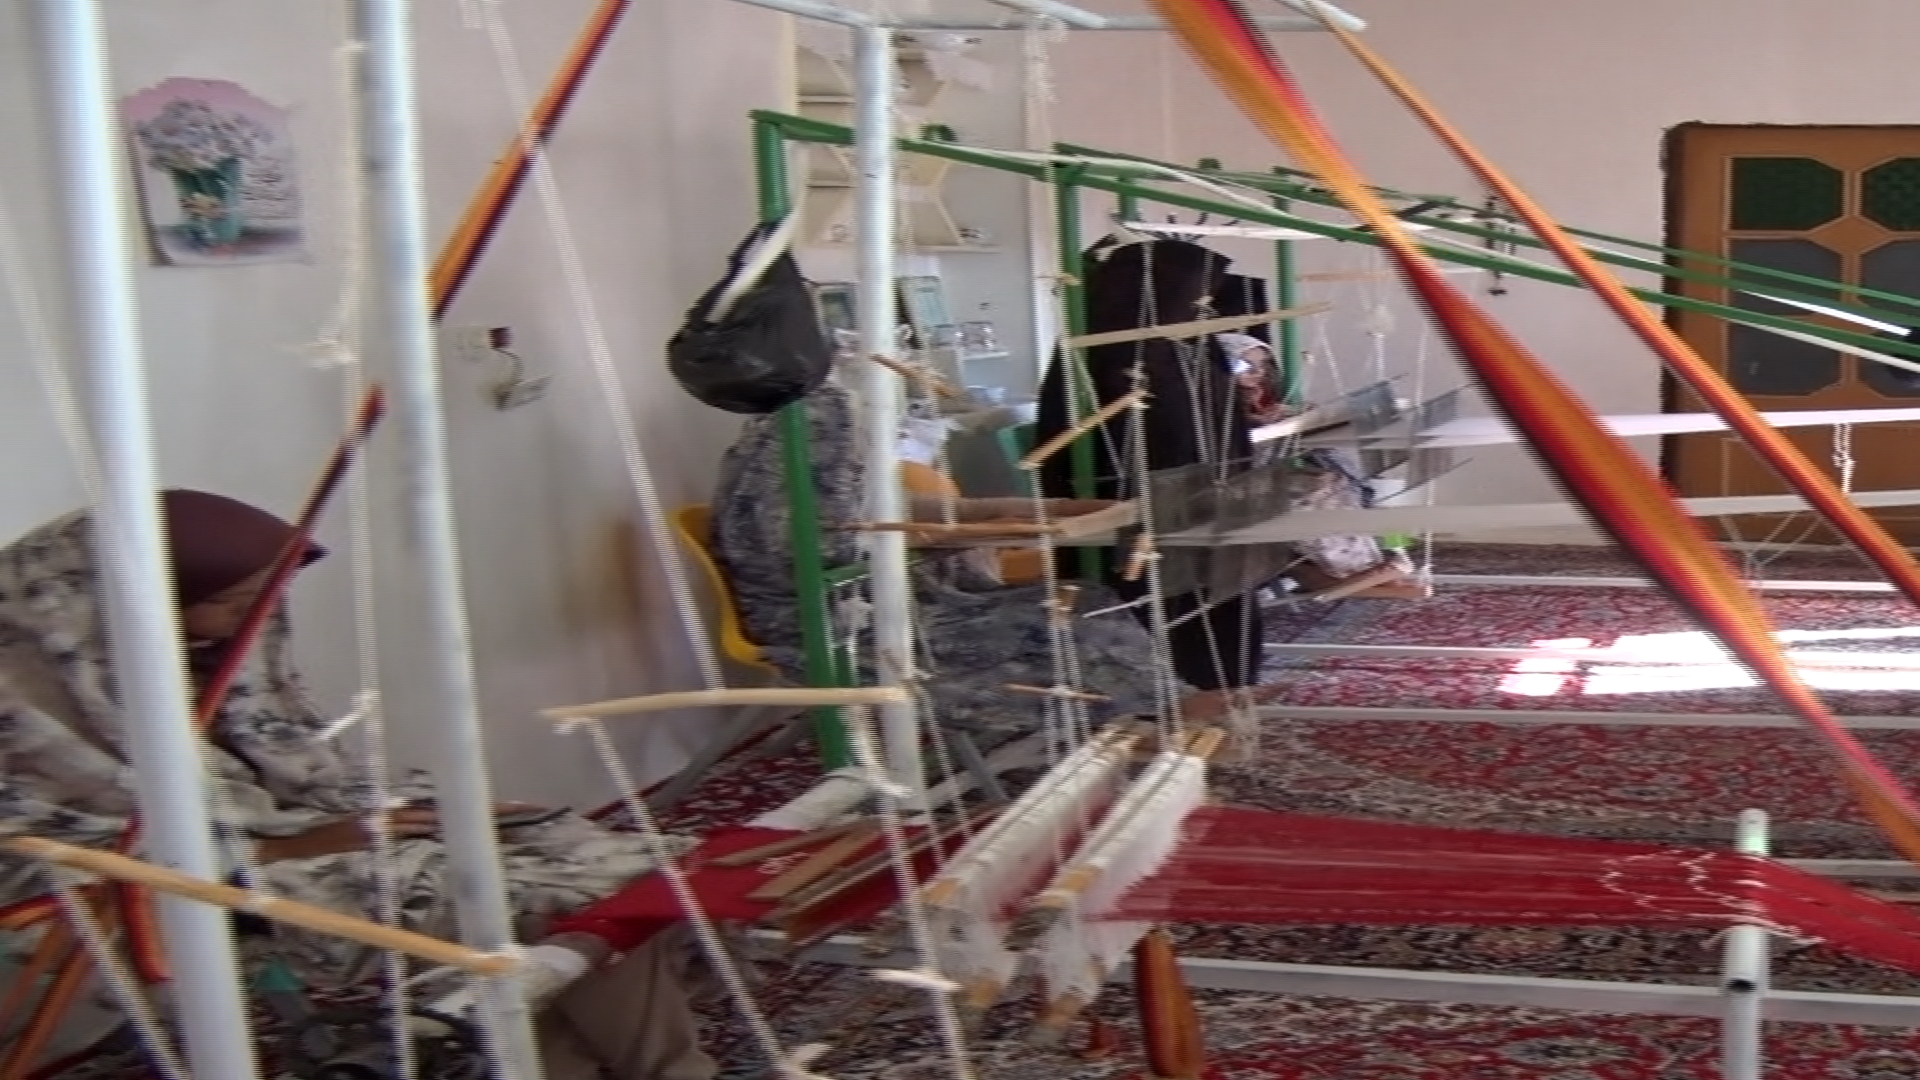 تهیه و ساخت 10 دستگاه دار ابریشم بافی در روستای بسک